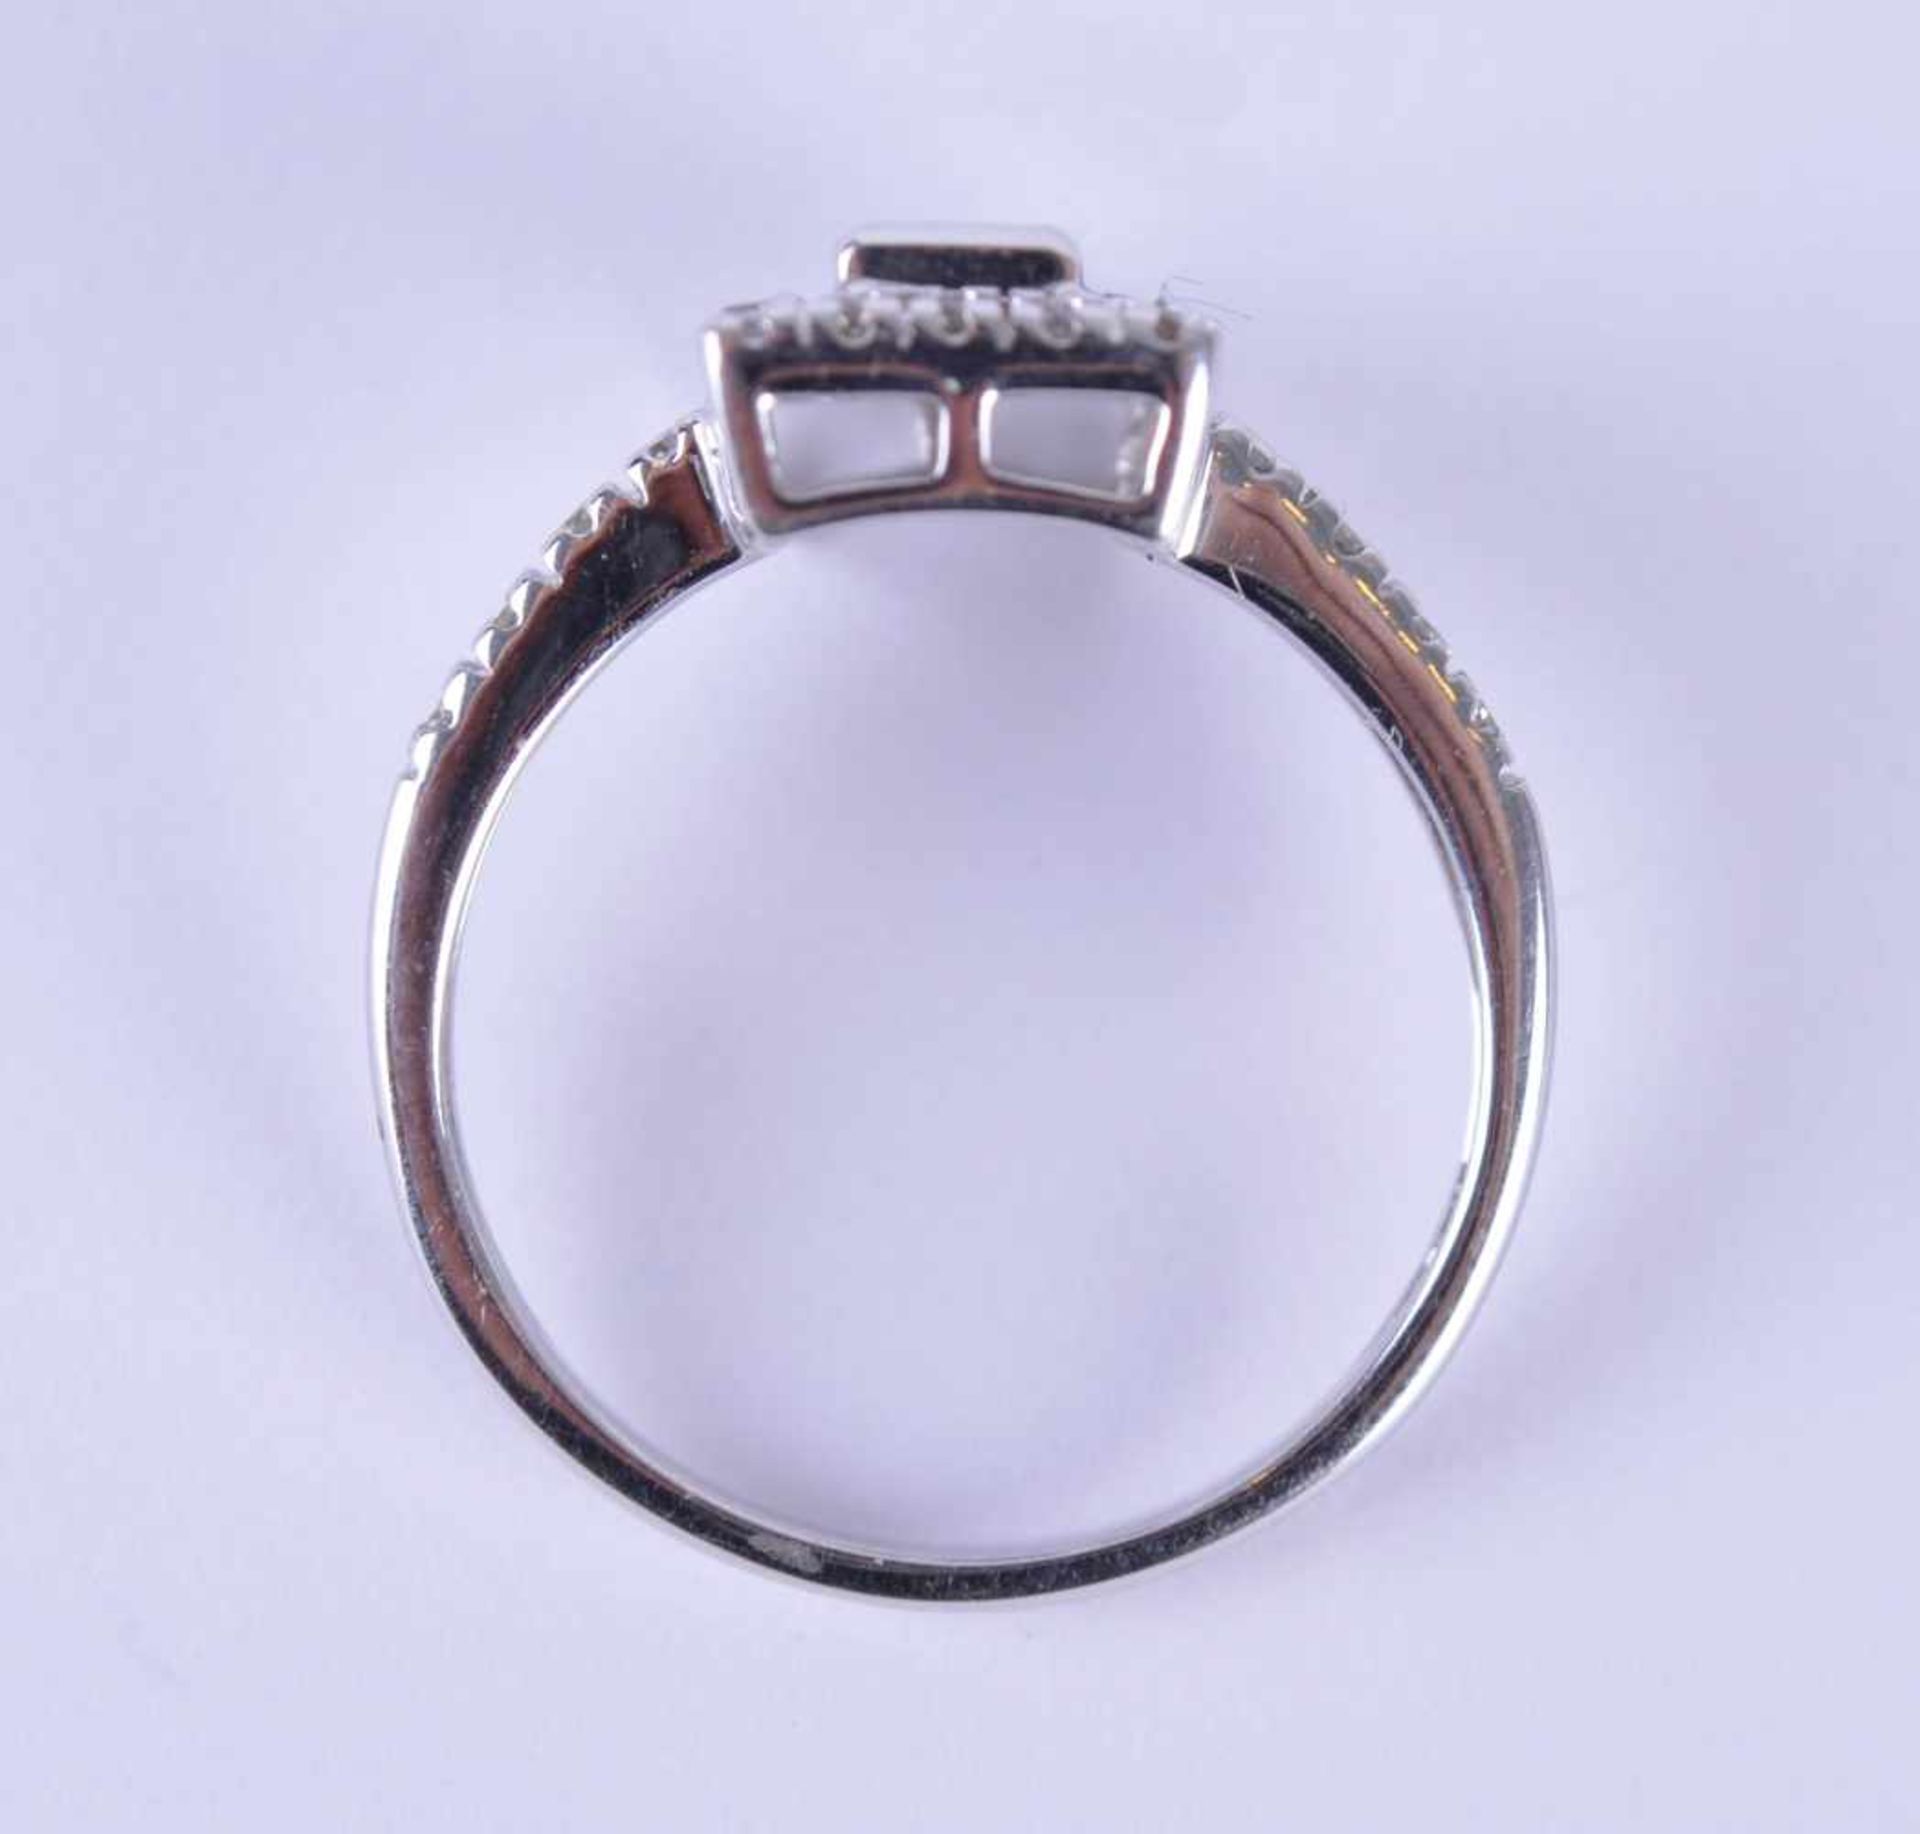 Brillant-Saphirring / Brilliant sapphire ringWG 585/000, Diamanten zusammen 0,20 ct, Saphir 0,50 ct, - Bild 4 aus 5